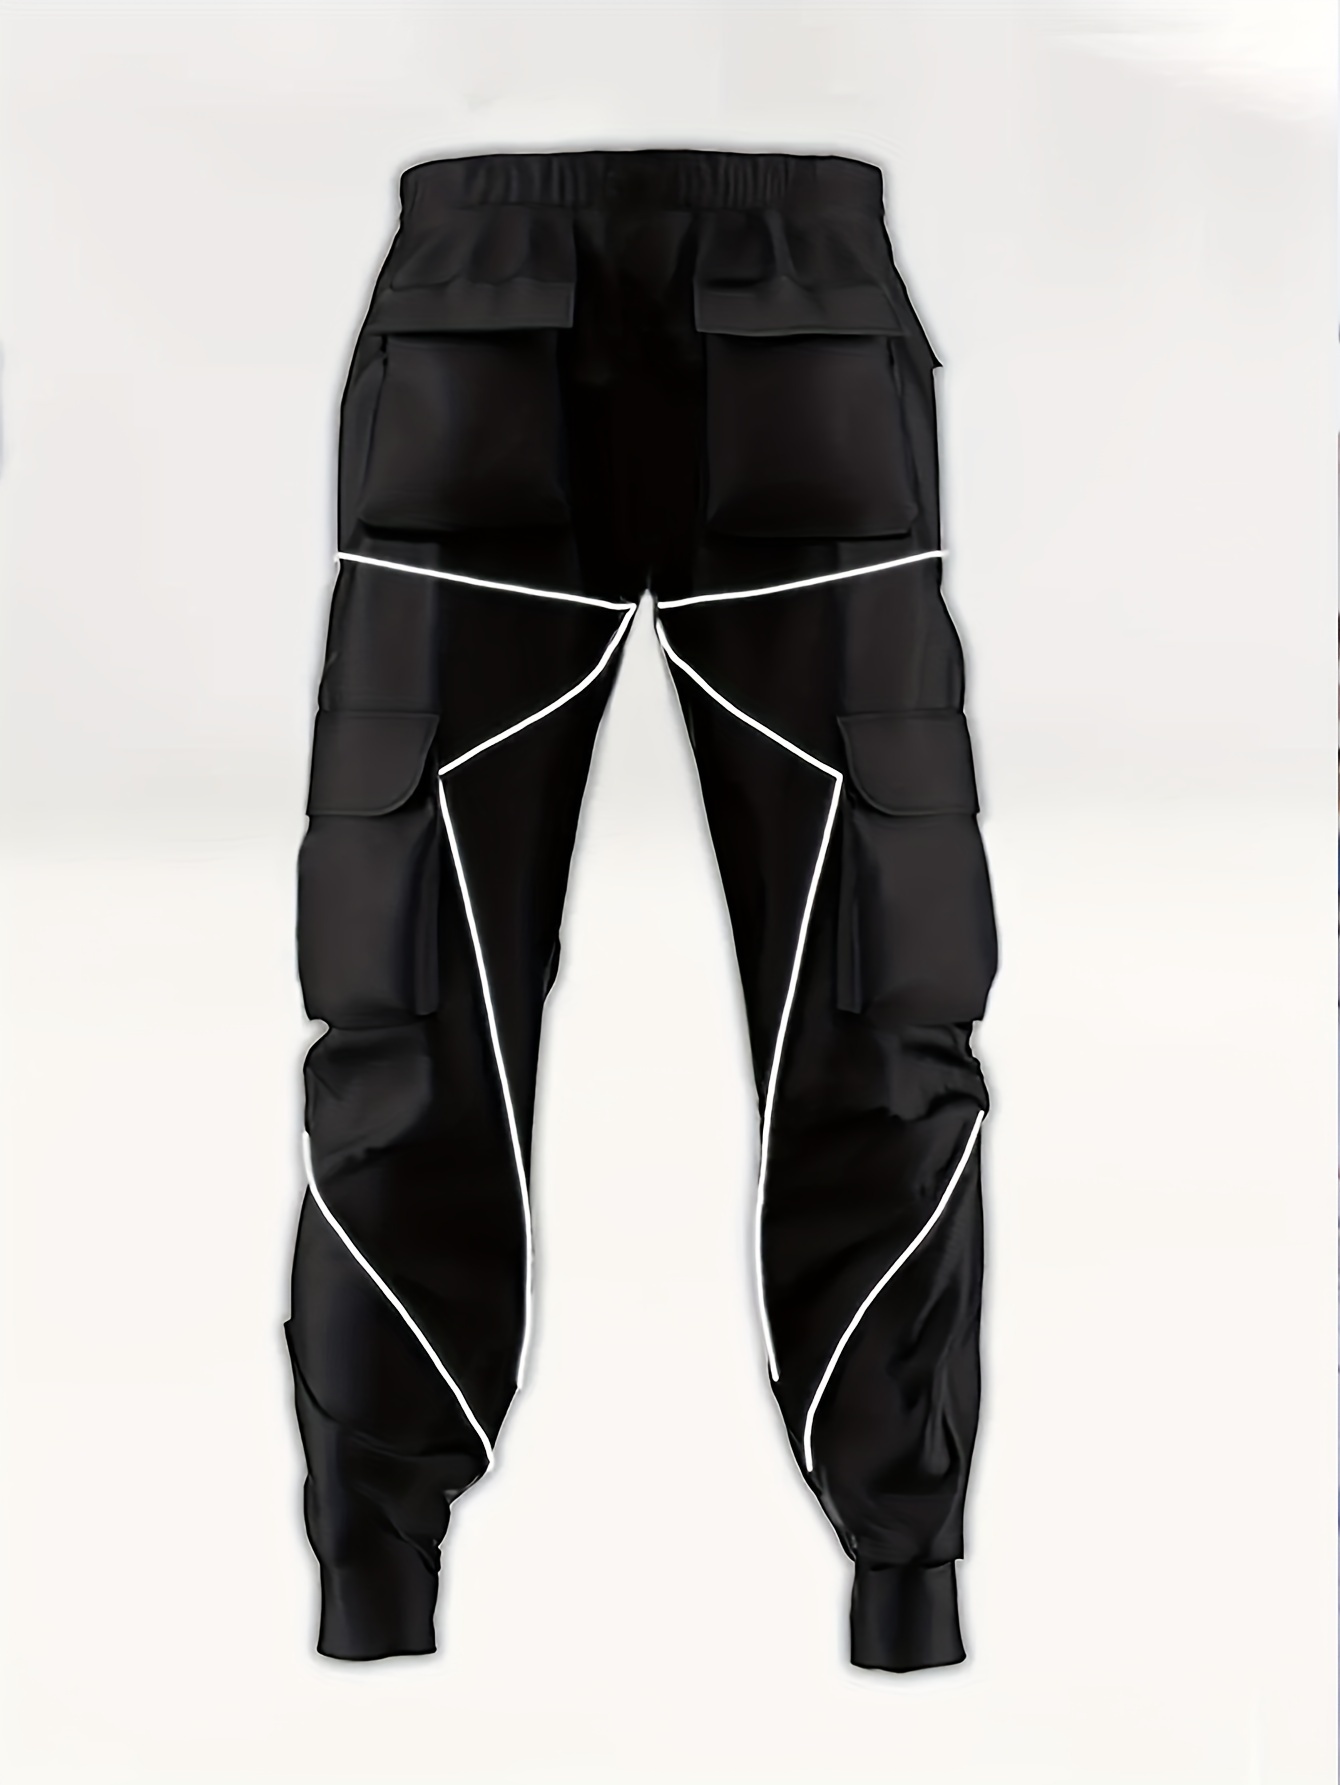 Guardurnaity Elegantes pantalones joggers cargo para hombres - Pantalones  harén cómodos y con múltip Guardurnaity